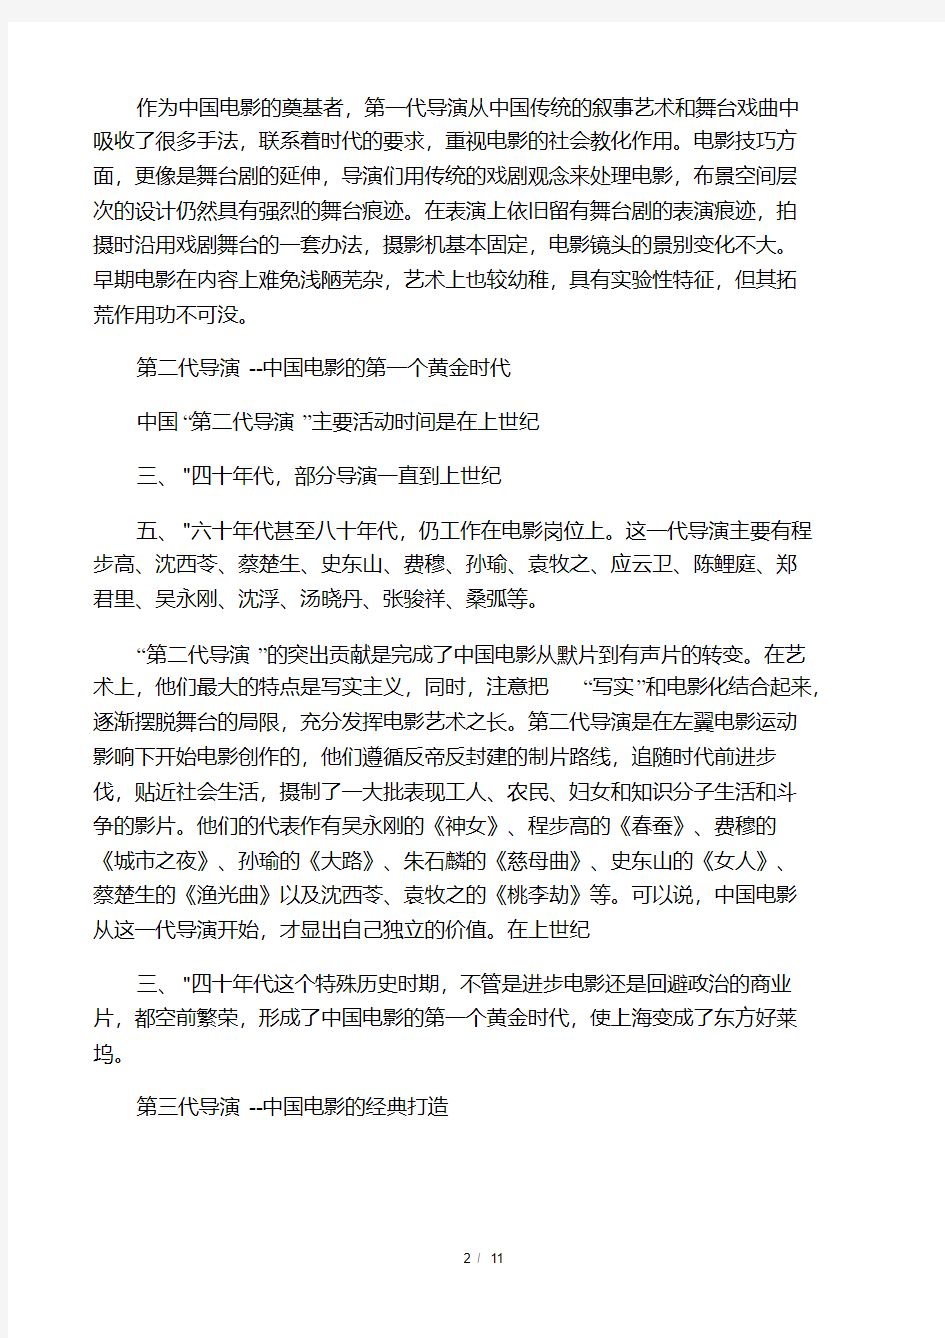 中国第六代导演及作品.pdf